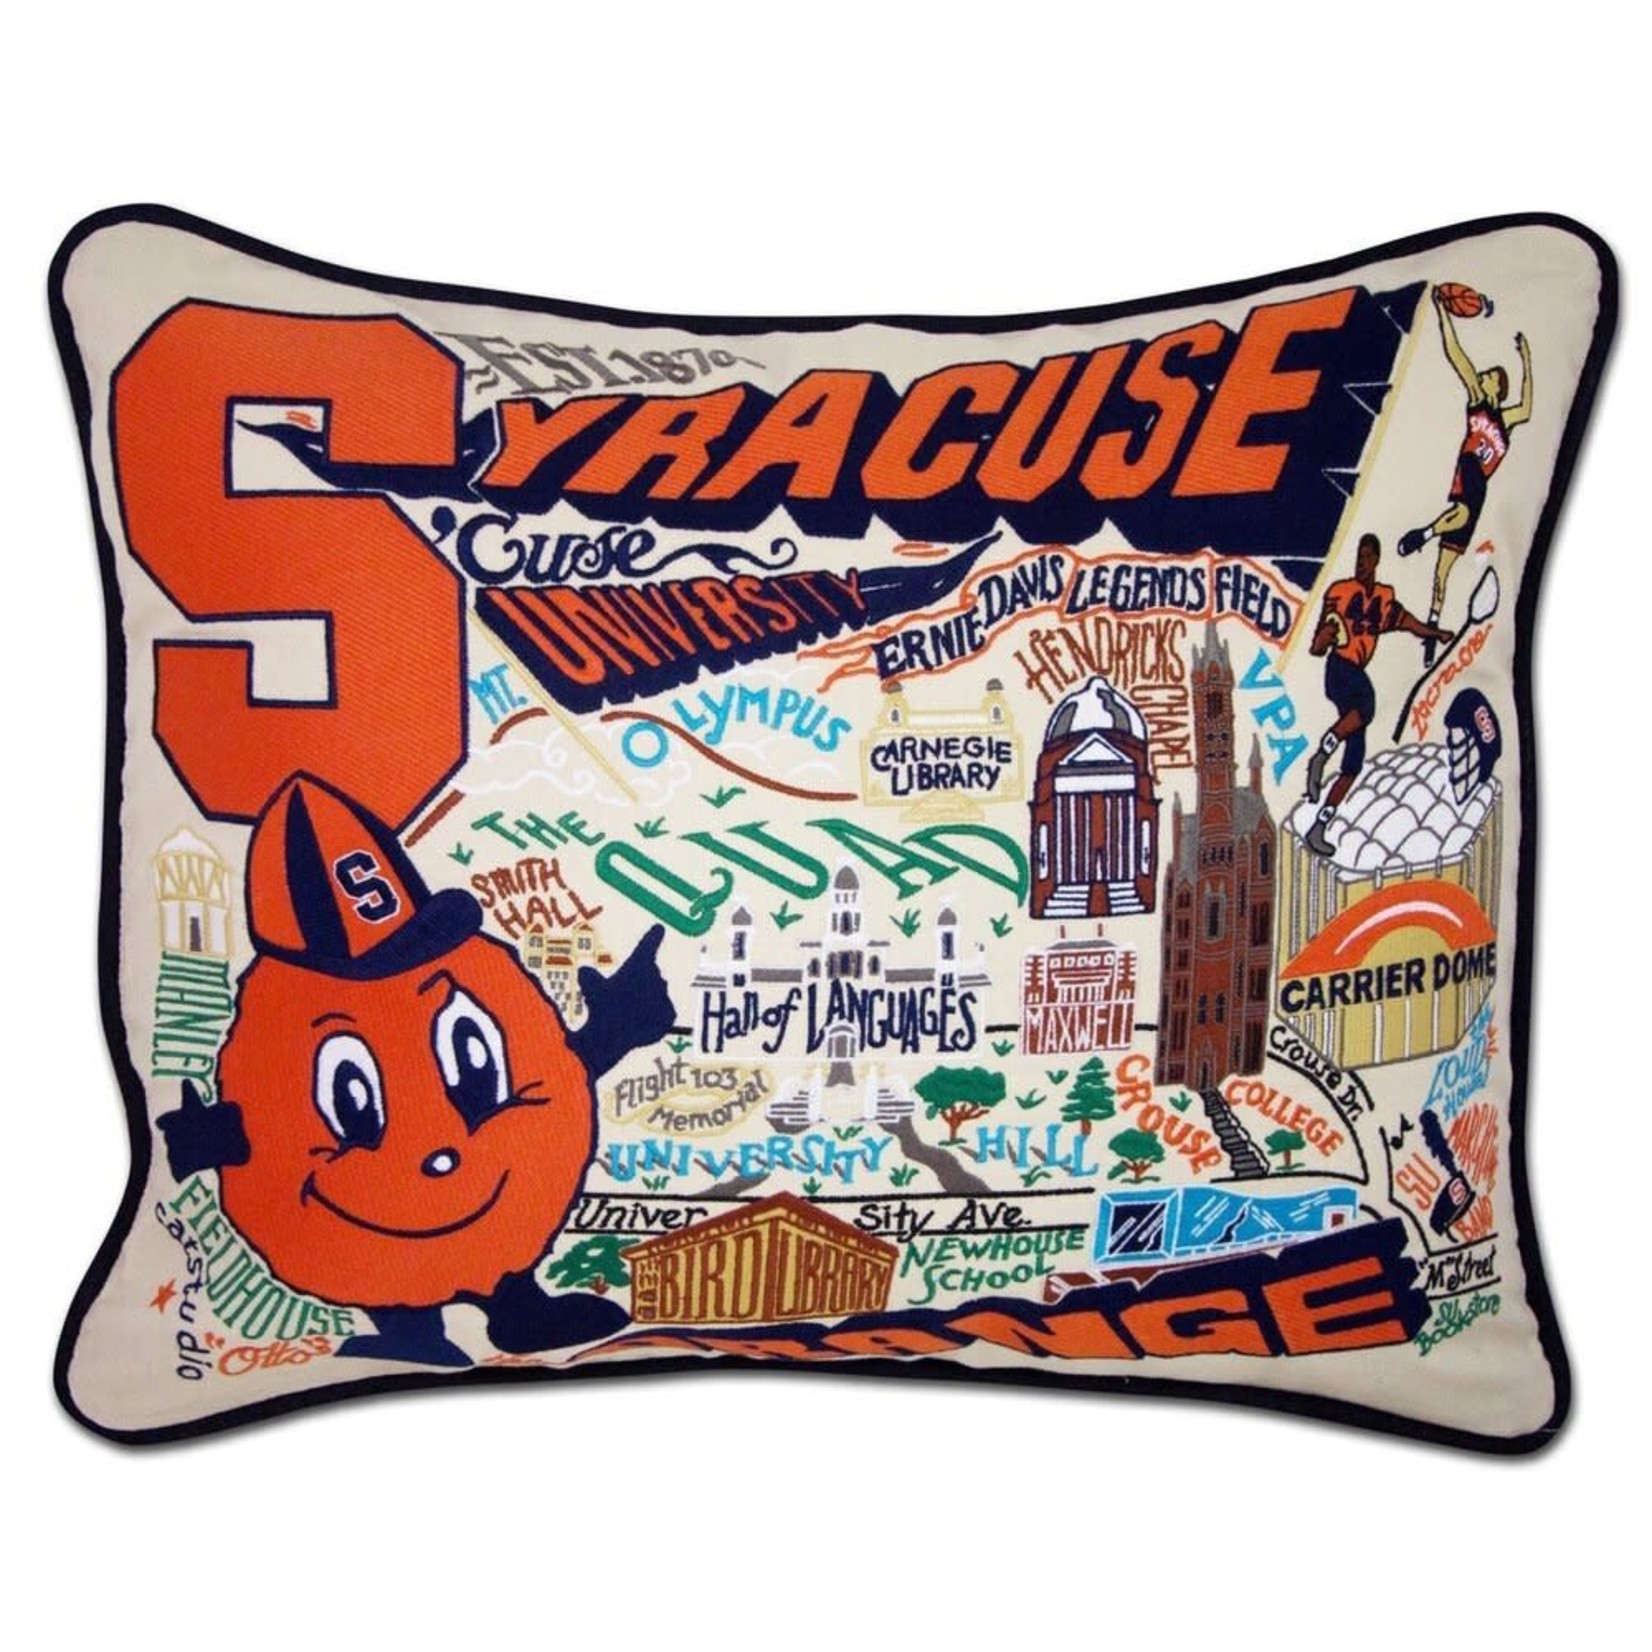 Catstudio Catstudio Collegiate Syracuse University Pillow